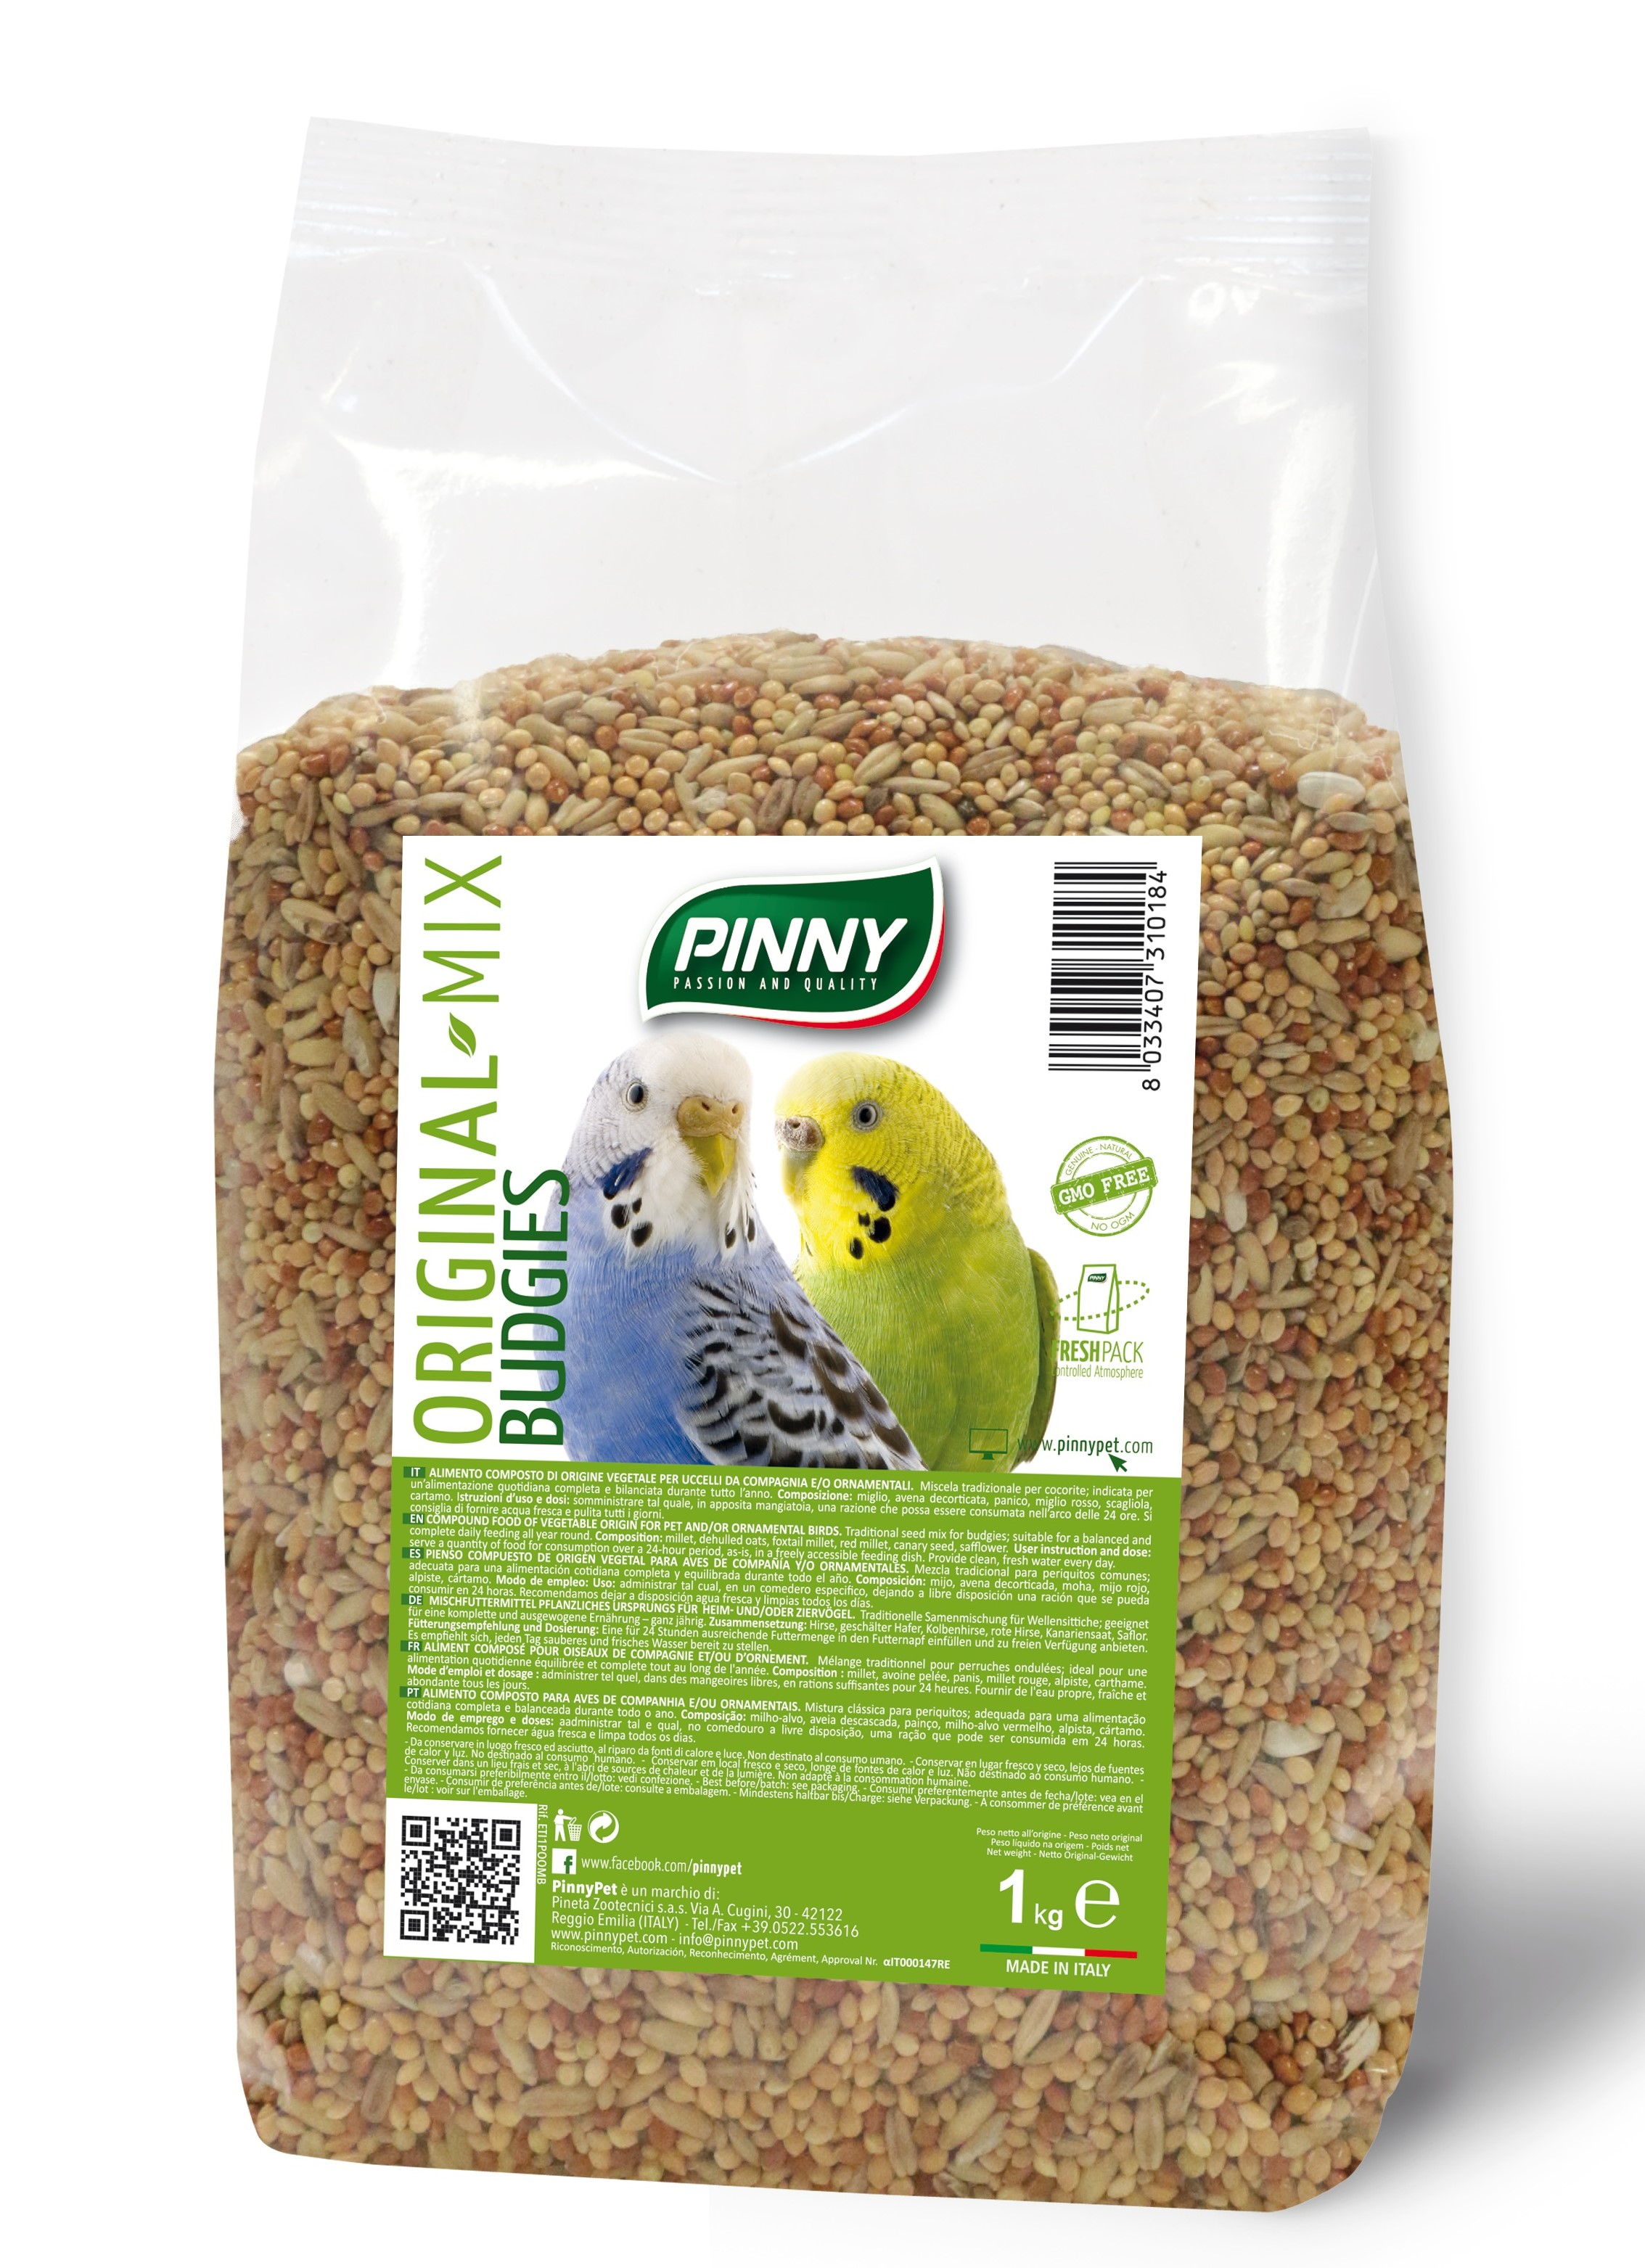 Сухой корм для волнистых попугаев PINNY Original mix зерновая смесь, Злаковое ассорти, 1кг